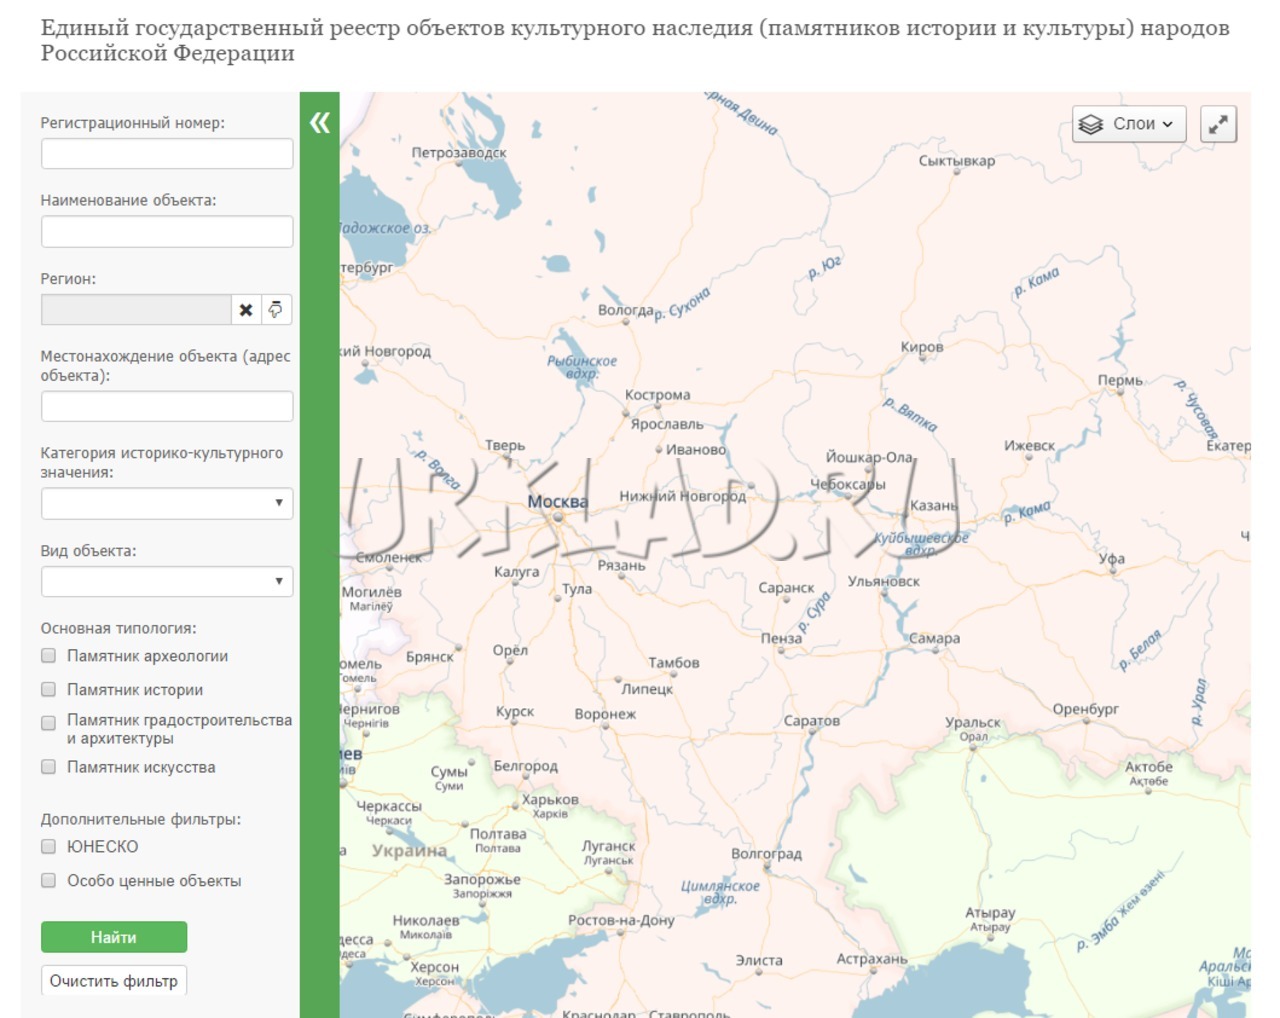 Кадастровая карта челябинской области официальный сайт госреестра со спутника в реальном времени